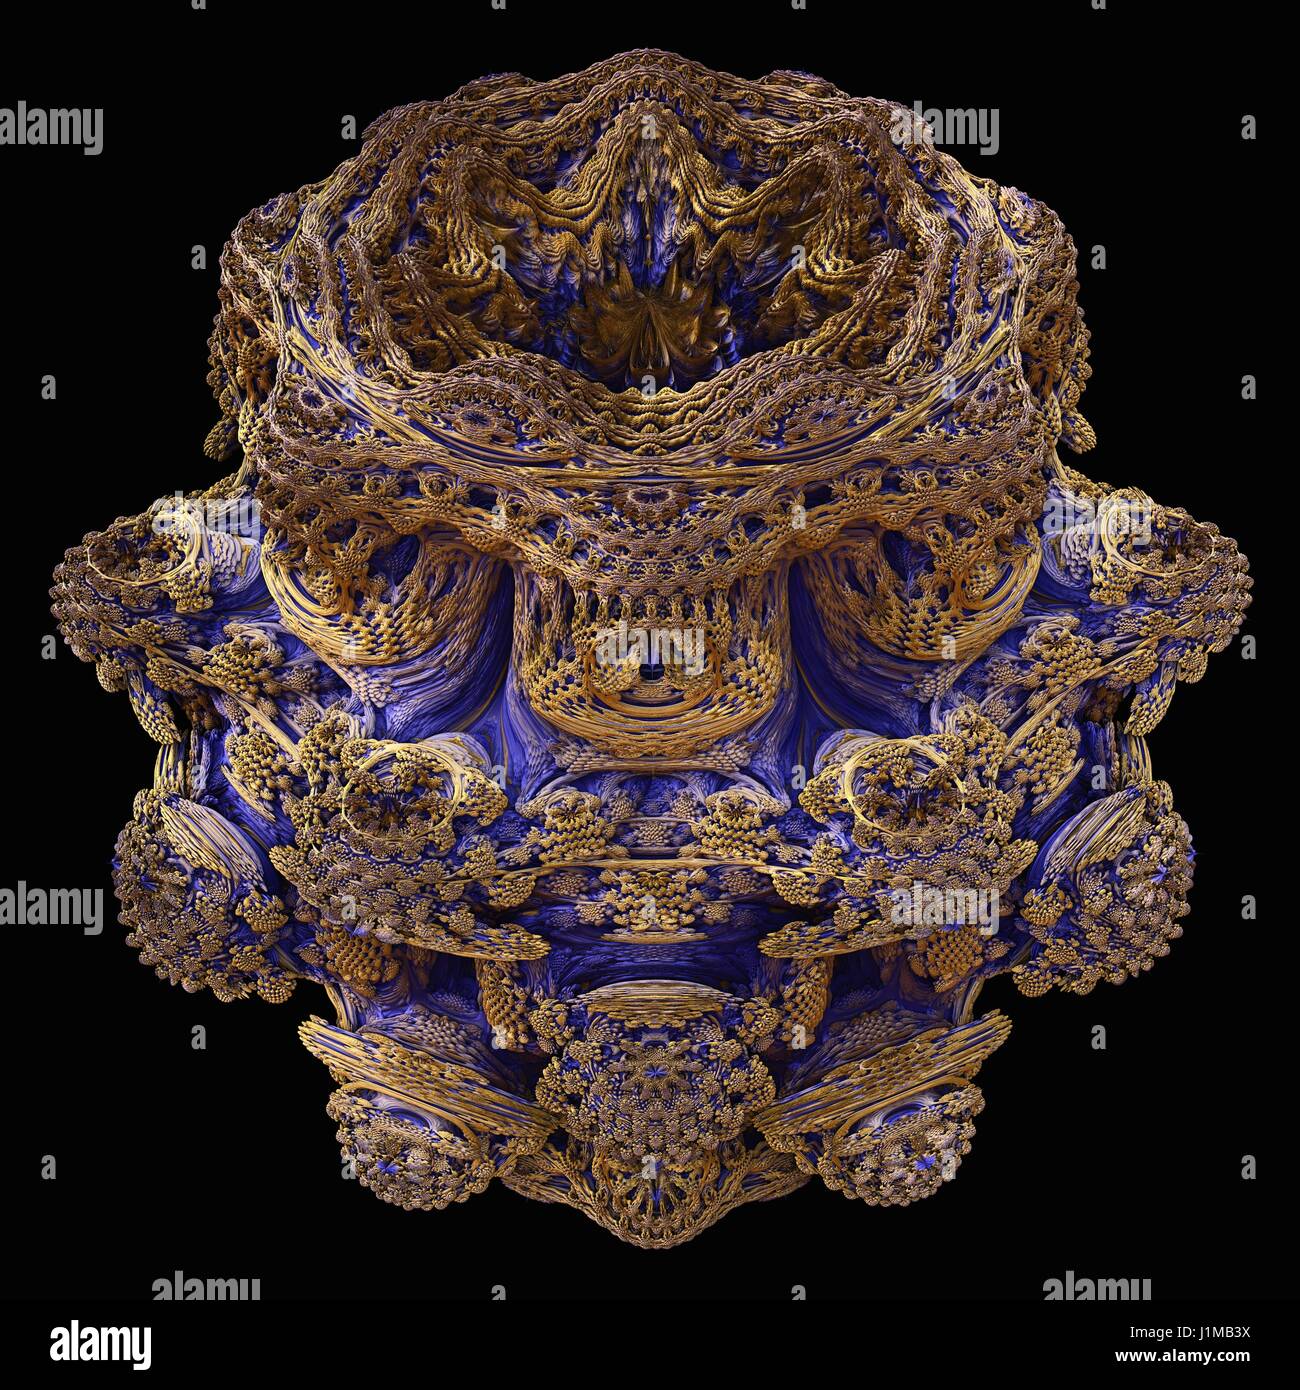 Mandelbulb Fraktal. Computer-generierte Bild ein dreidimensionales Analogon abgeleitete Form eine Mandelbrot-Menge mit Kugelkoordinaten. Stockfoto